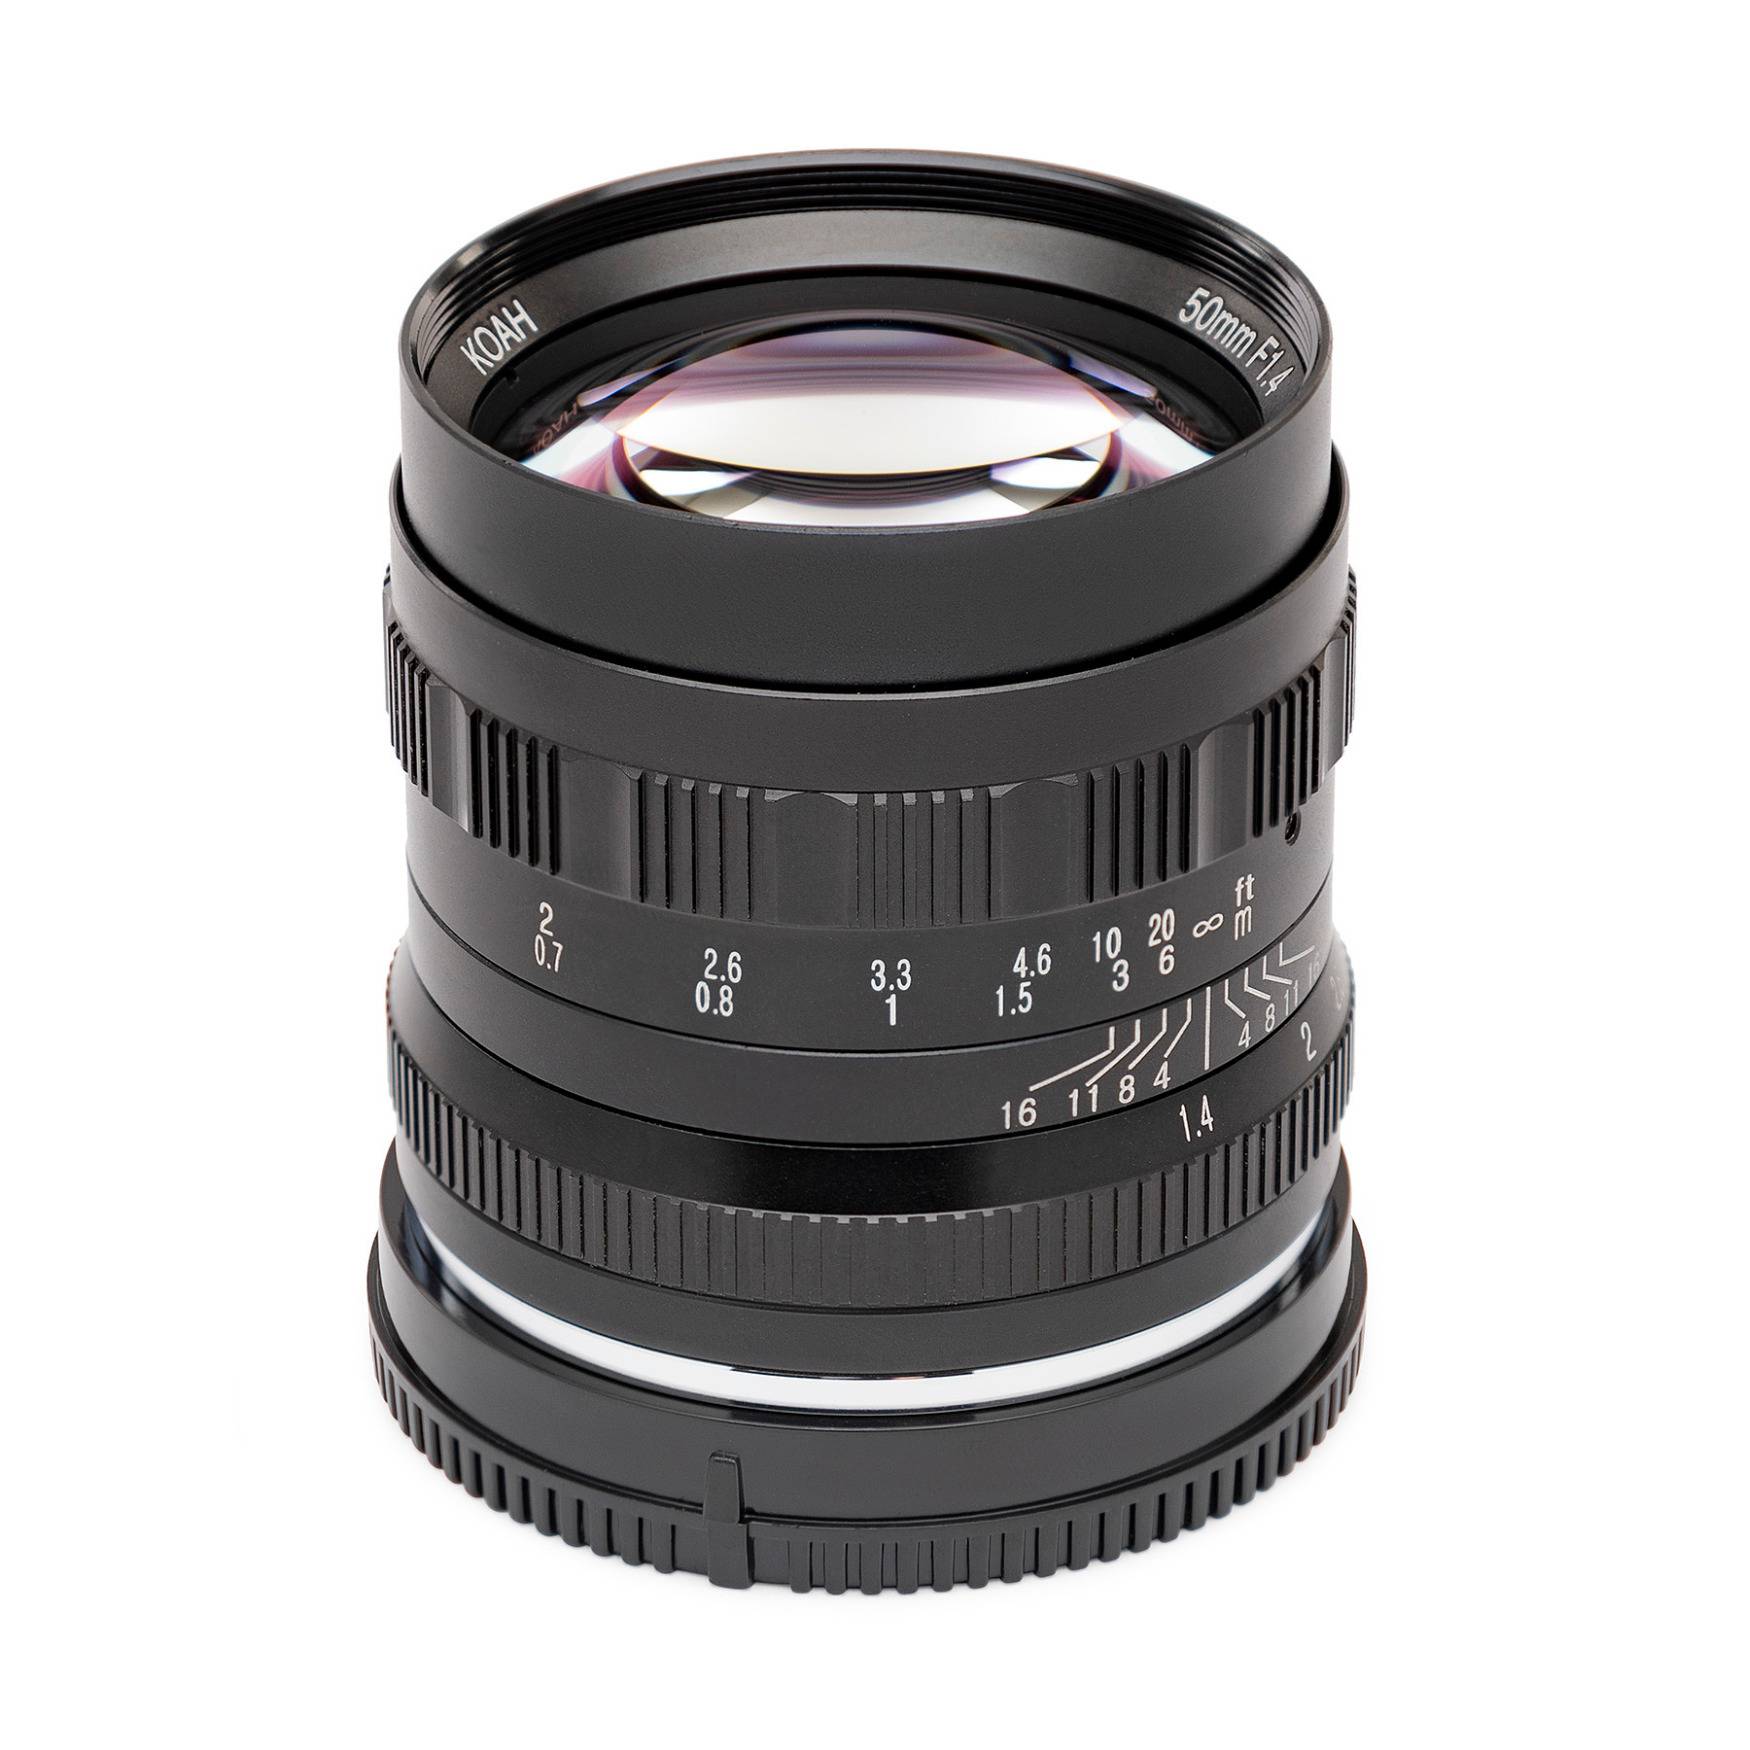 Koah Artisans Series 50mm f/1.4 Large Aperture Manual Focus Lens for Sony E (Black)